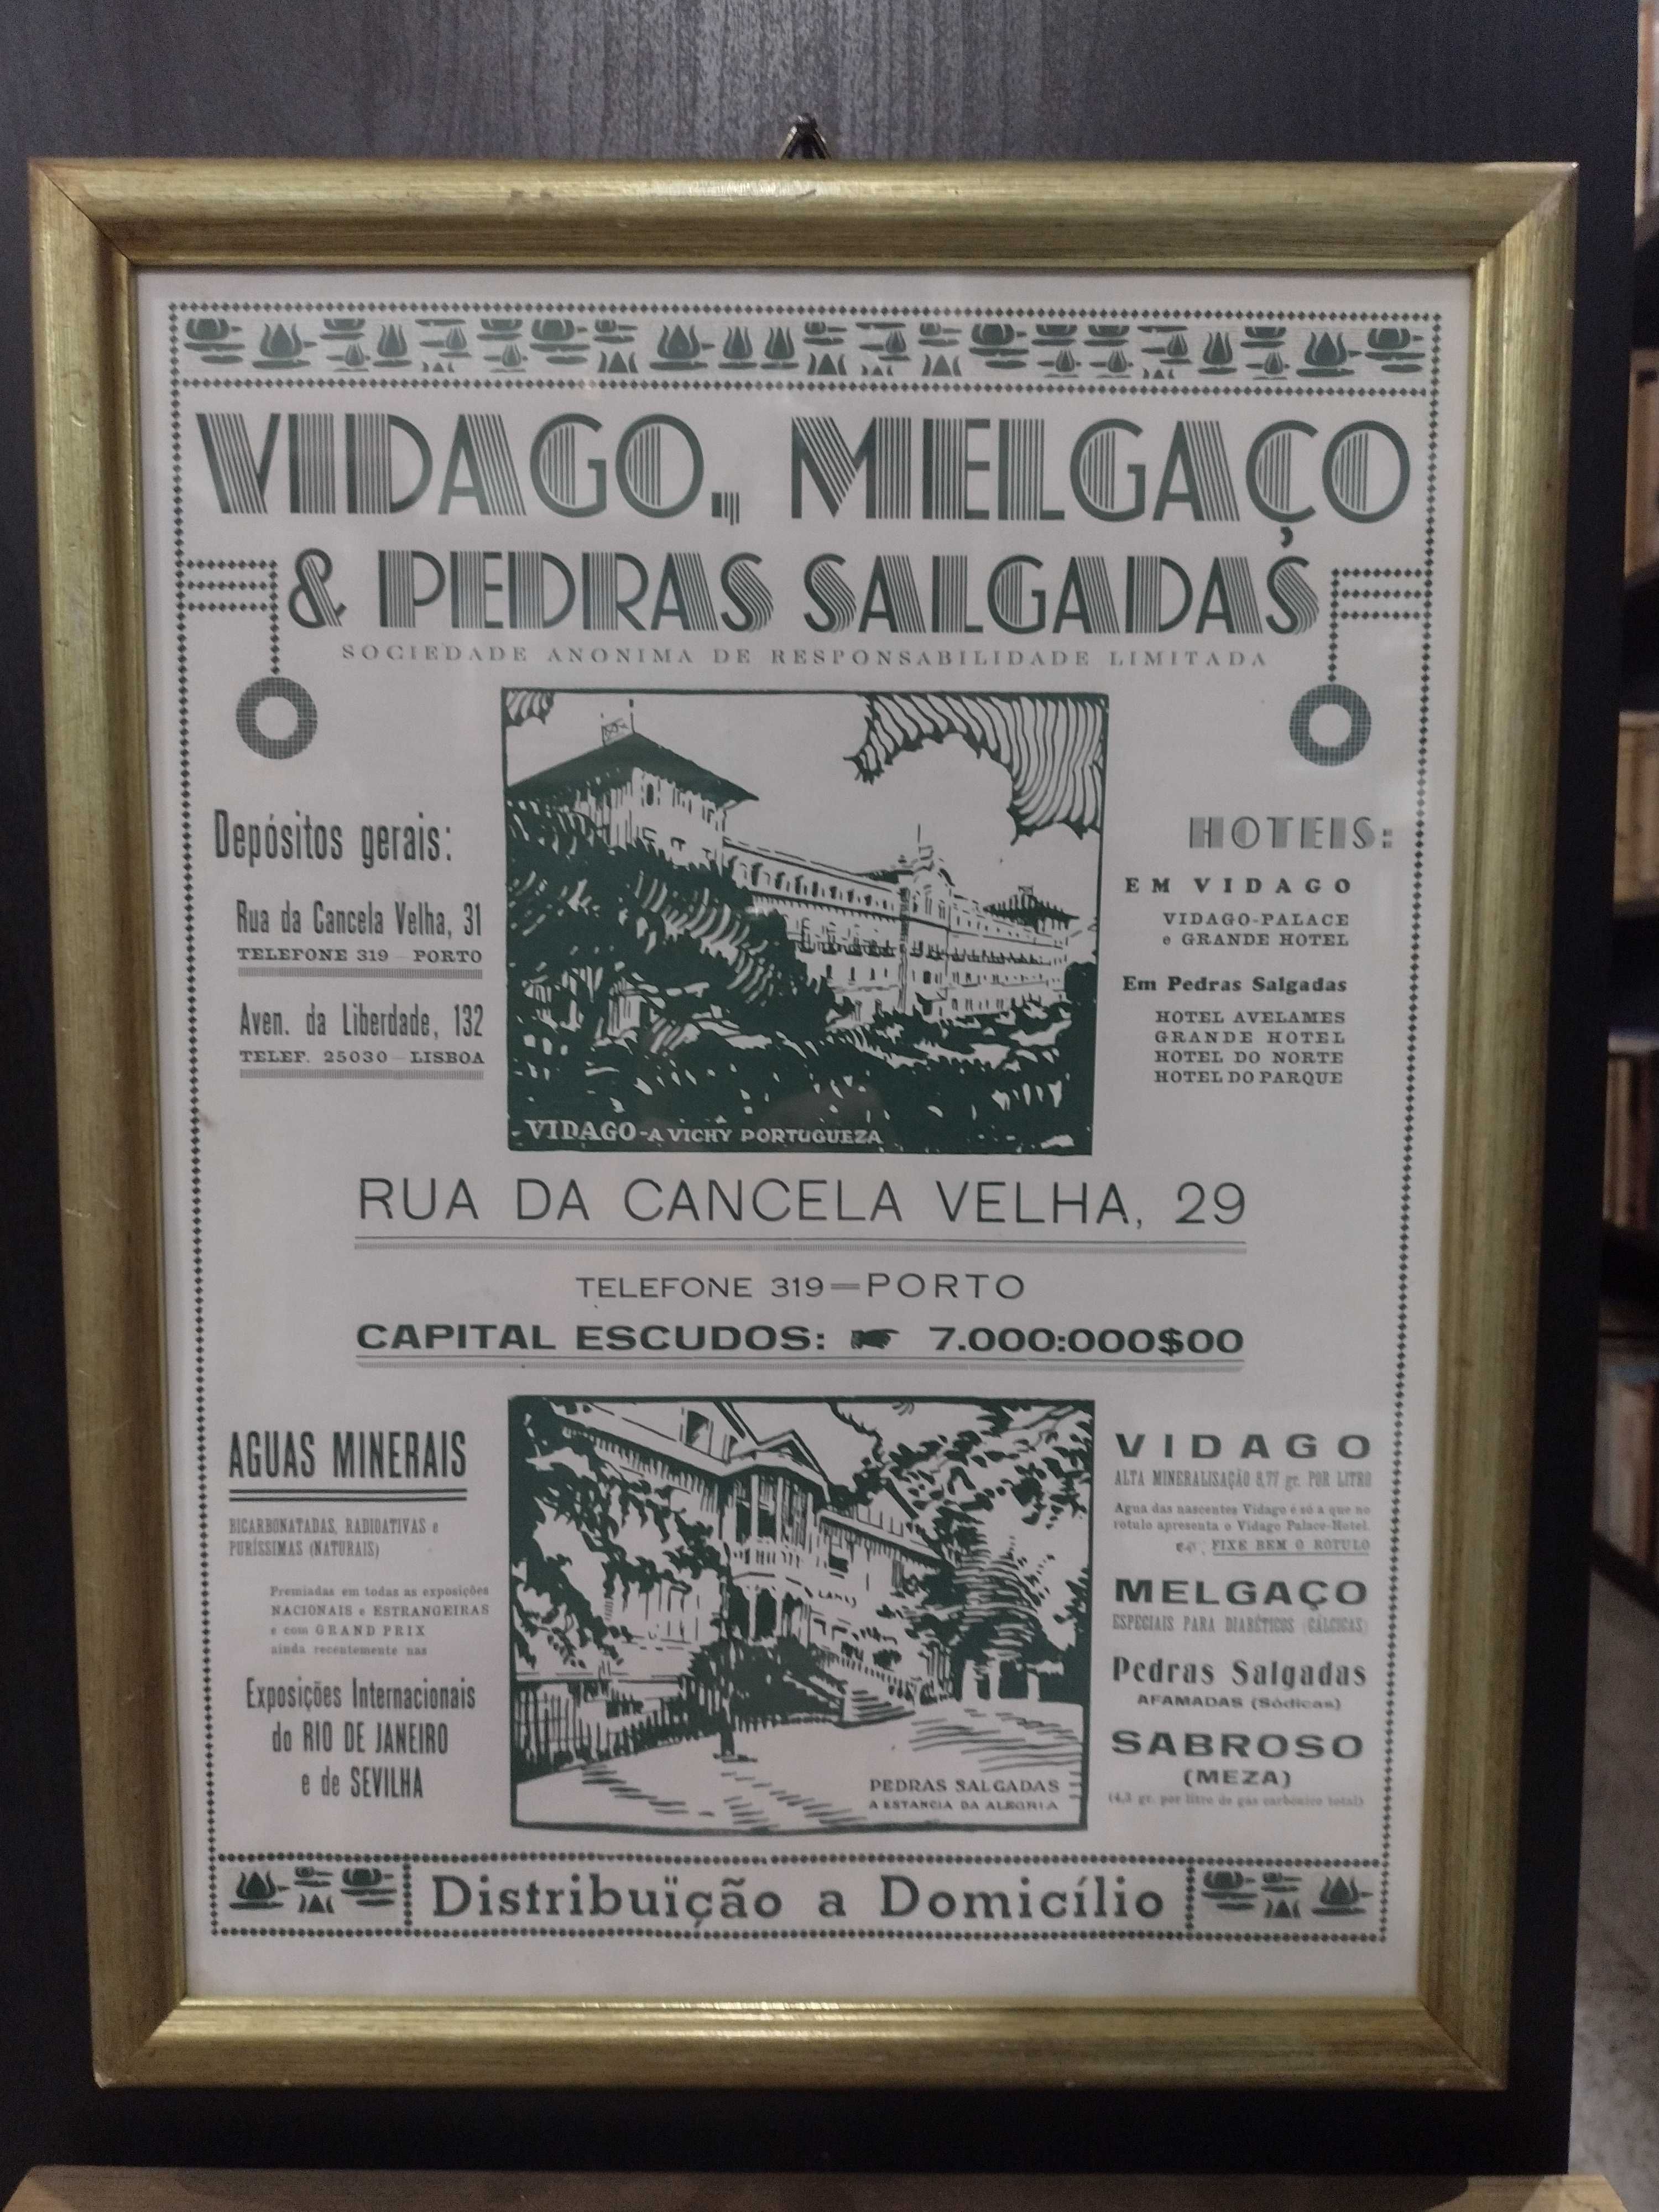 Vidago, Melgaço & Pedras Salgadas 1933